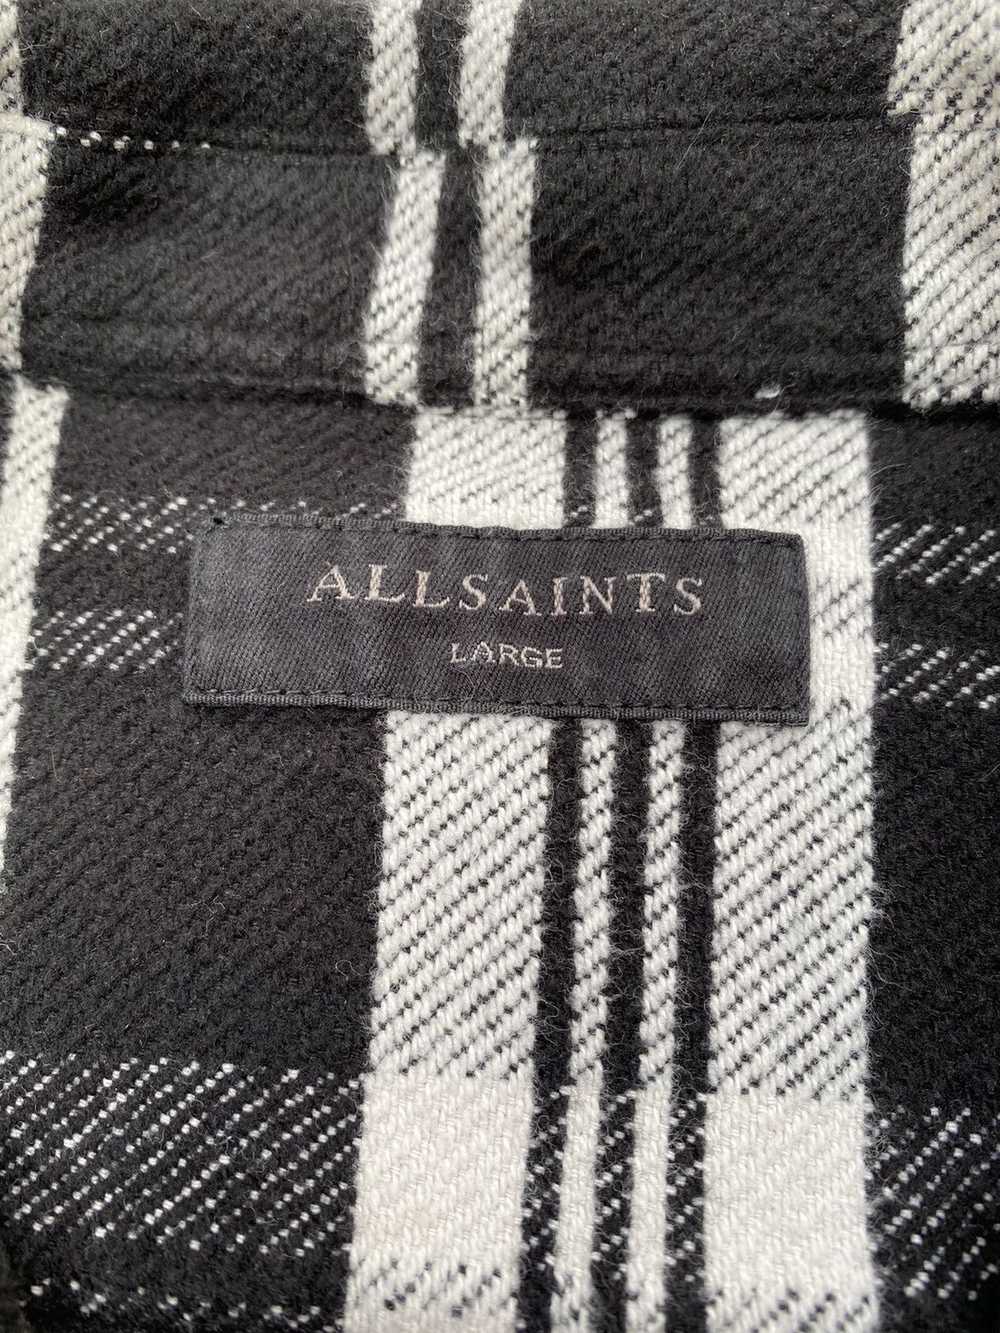 Allsaints AllSaints Cervino Flannel Shirt Jacket - image 5